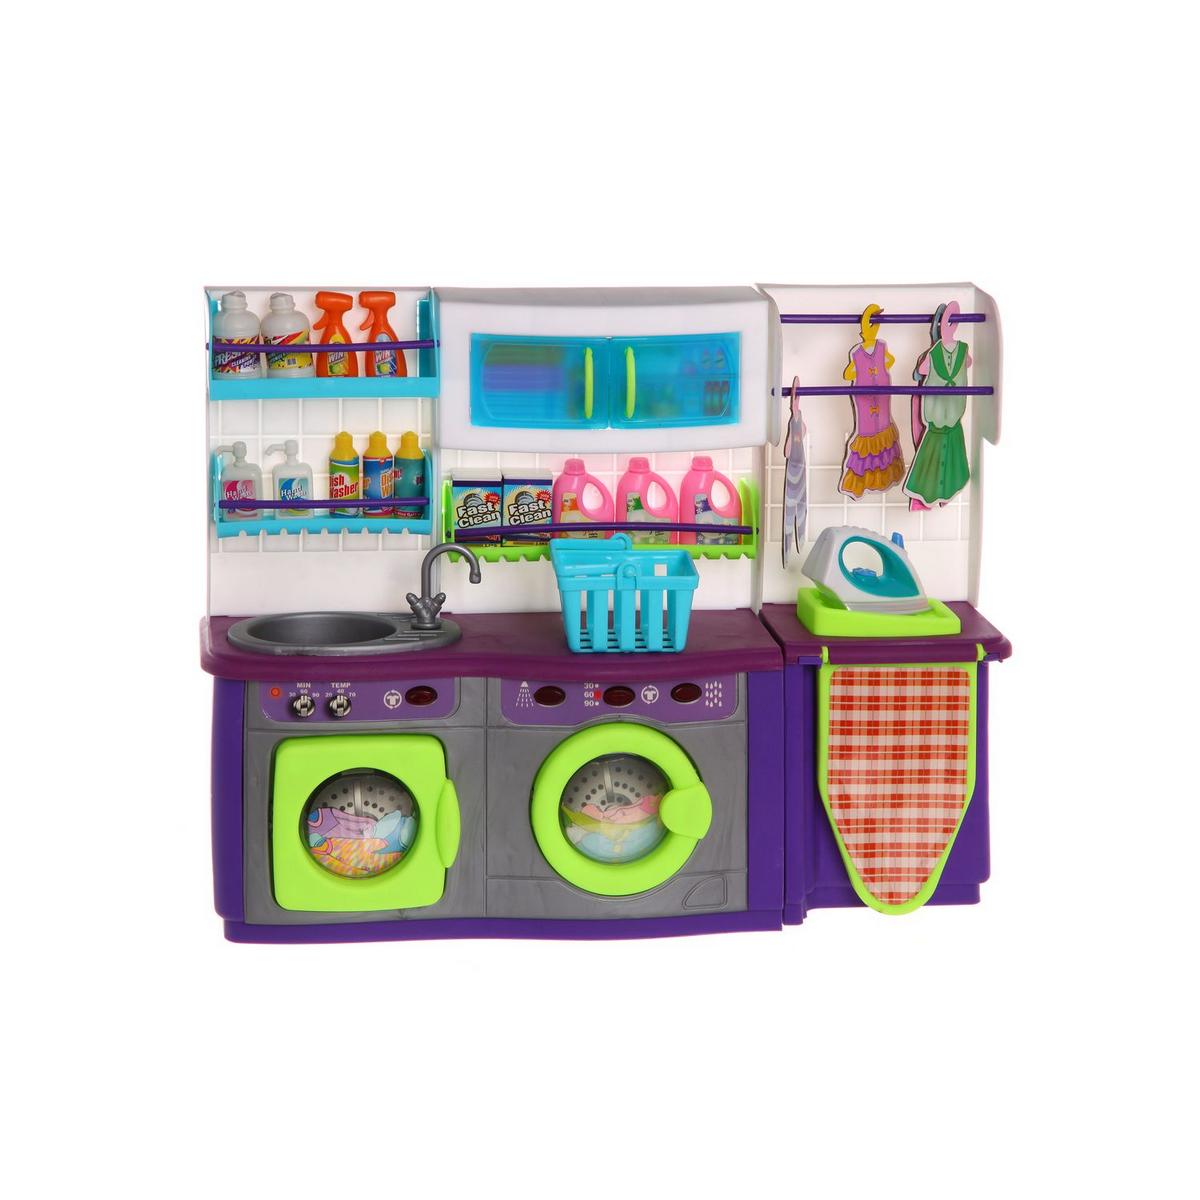 Кухня со звуком. Игрушка кухня для девочек. Маленькая игрушечная кухня. Игровые наборы для девочек. Игровой набор кухни маленький.